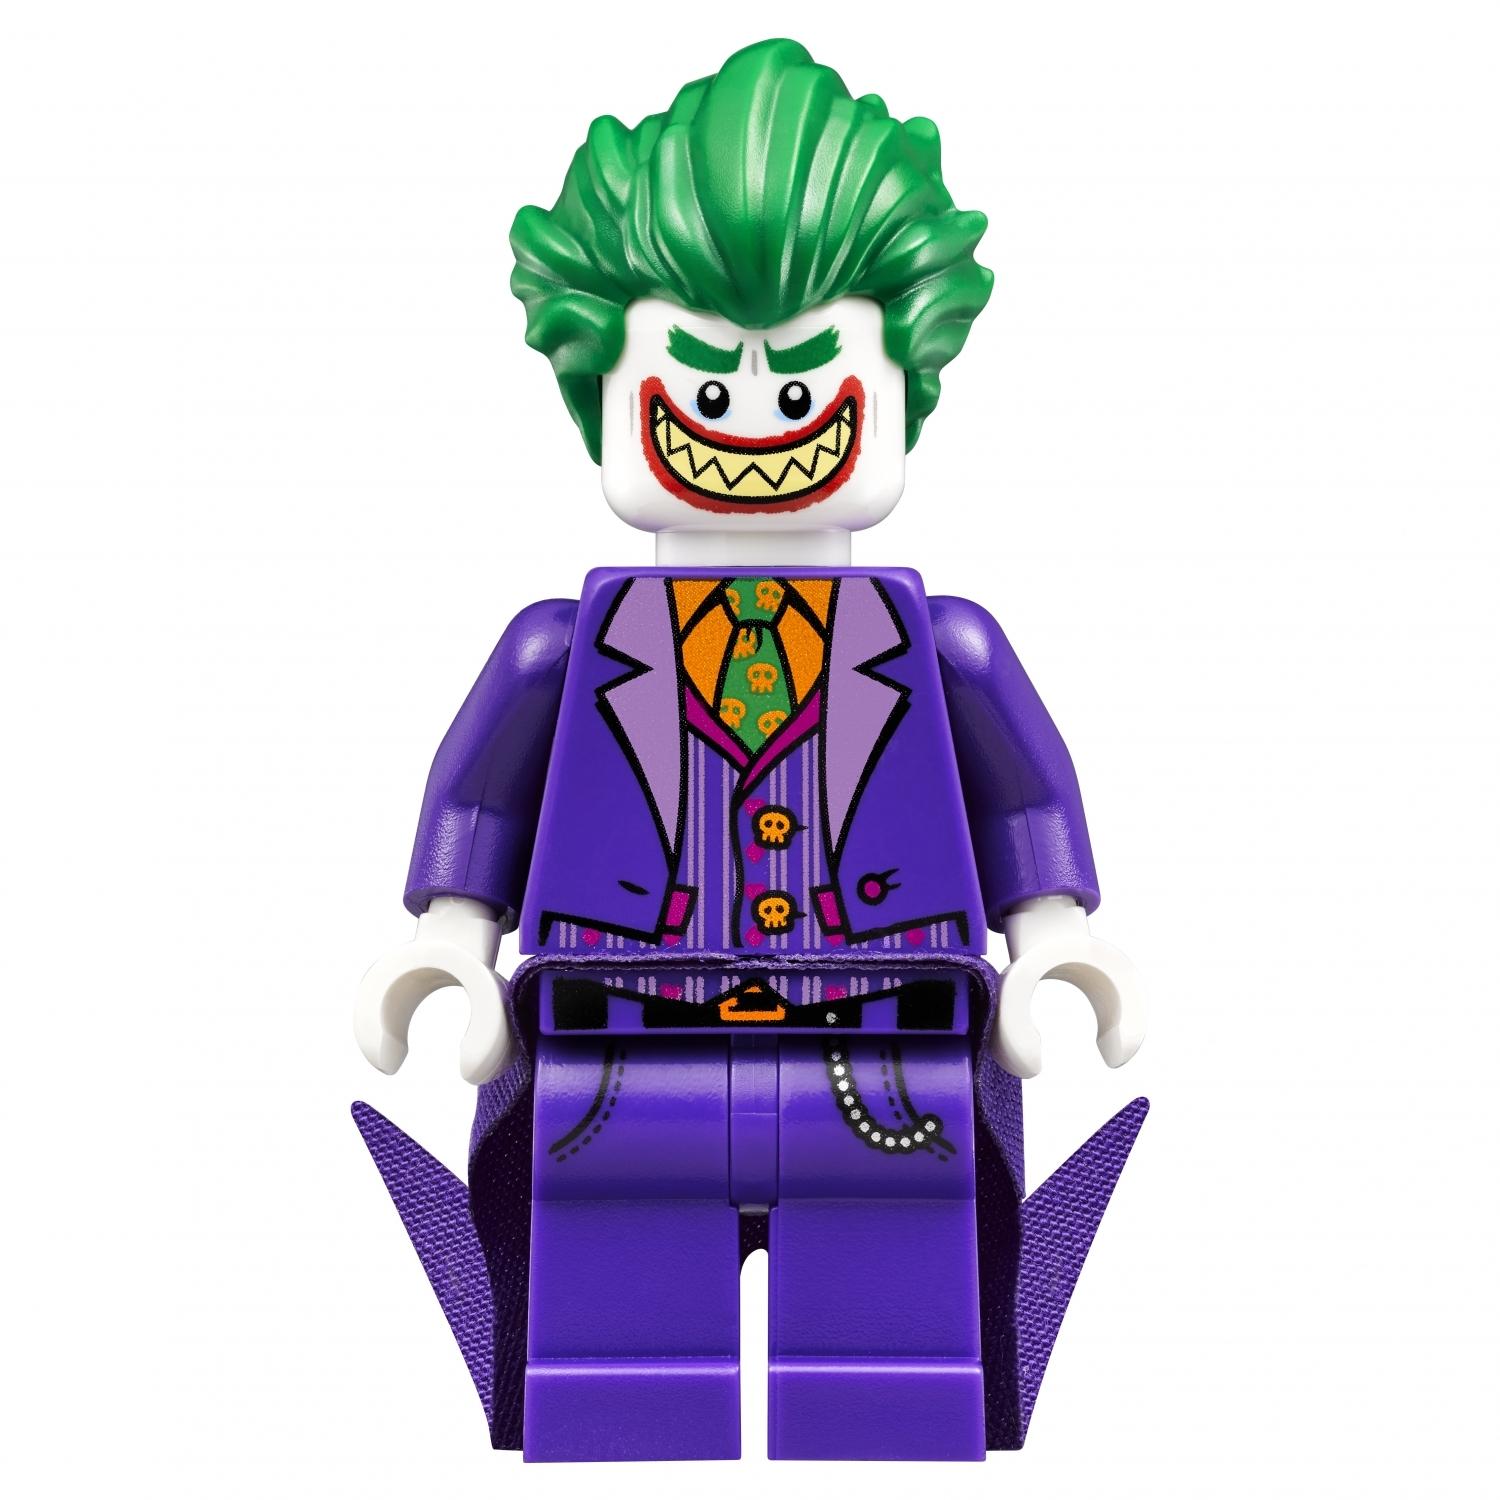 Lego Batman 70900 Побег Джокера на воздушном шаре